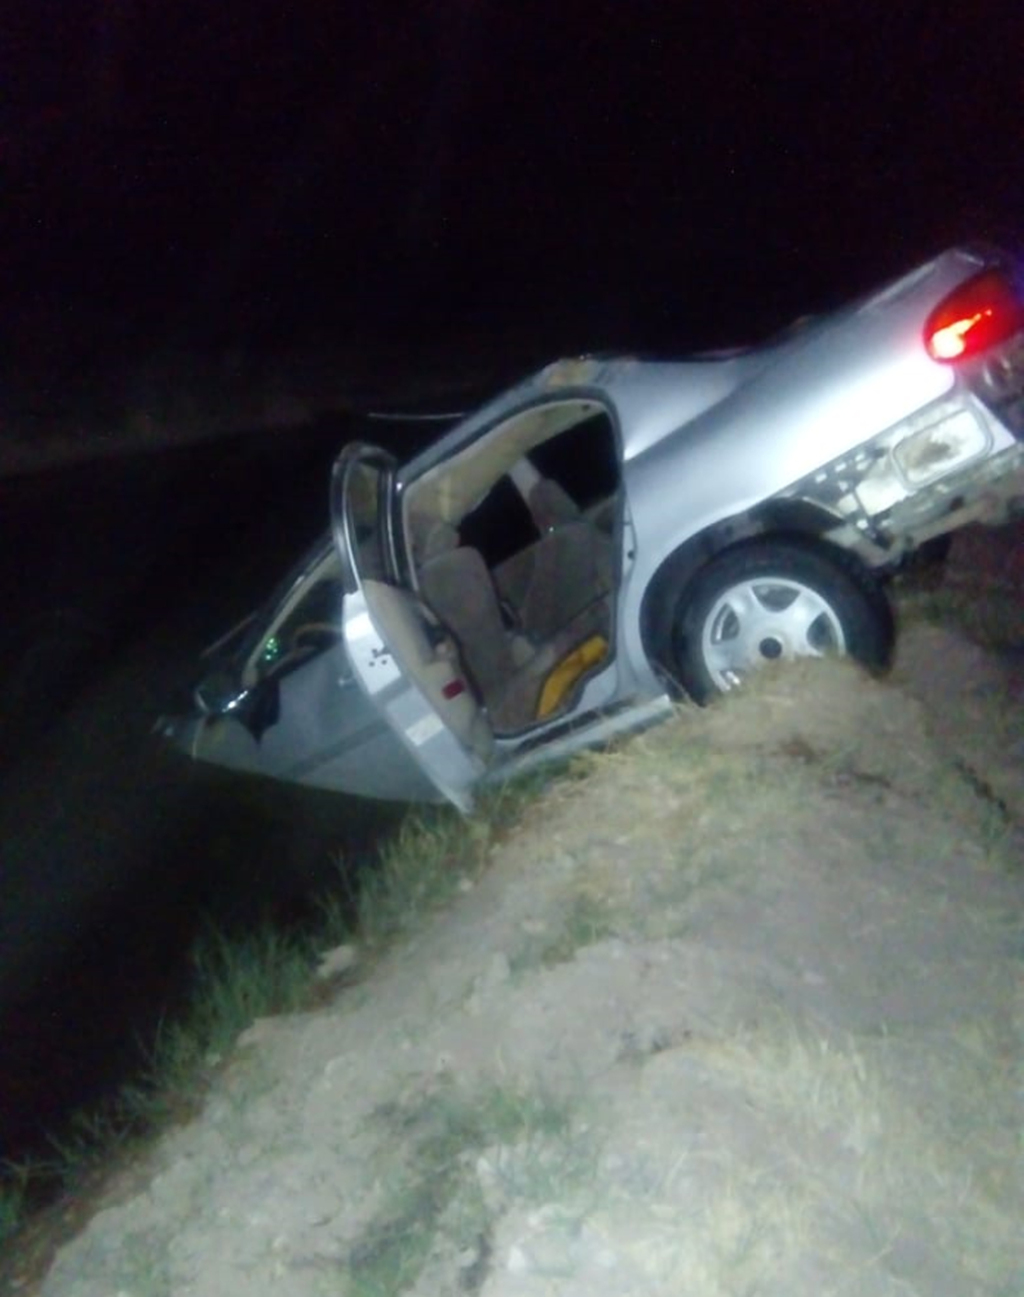 La madrugada del domingo, un vehículo se accidentó y cayó al canal en el tramo entre los ejidos San Pablo y El Venado del municipio de San Pedro; un joven perdió la vida.